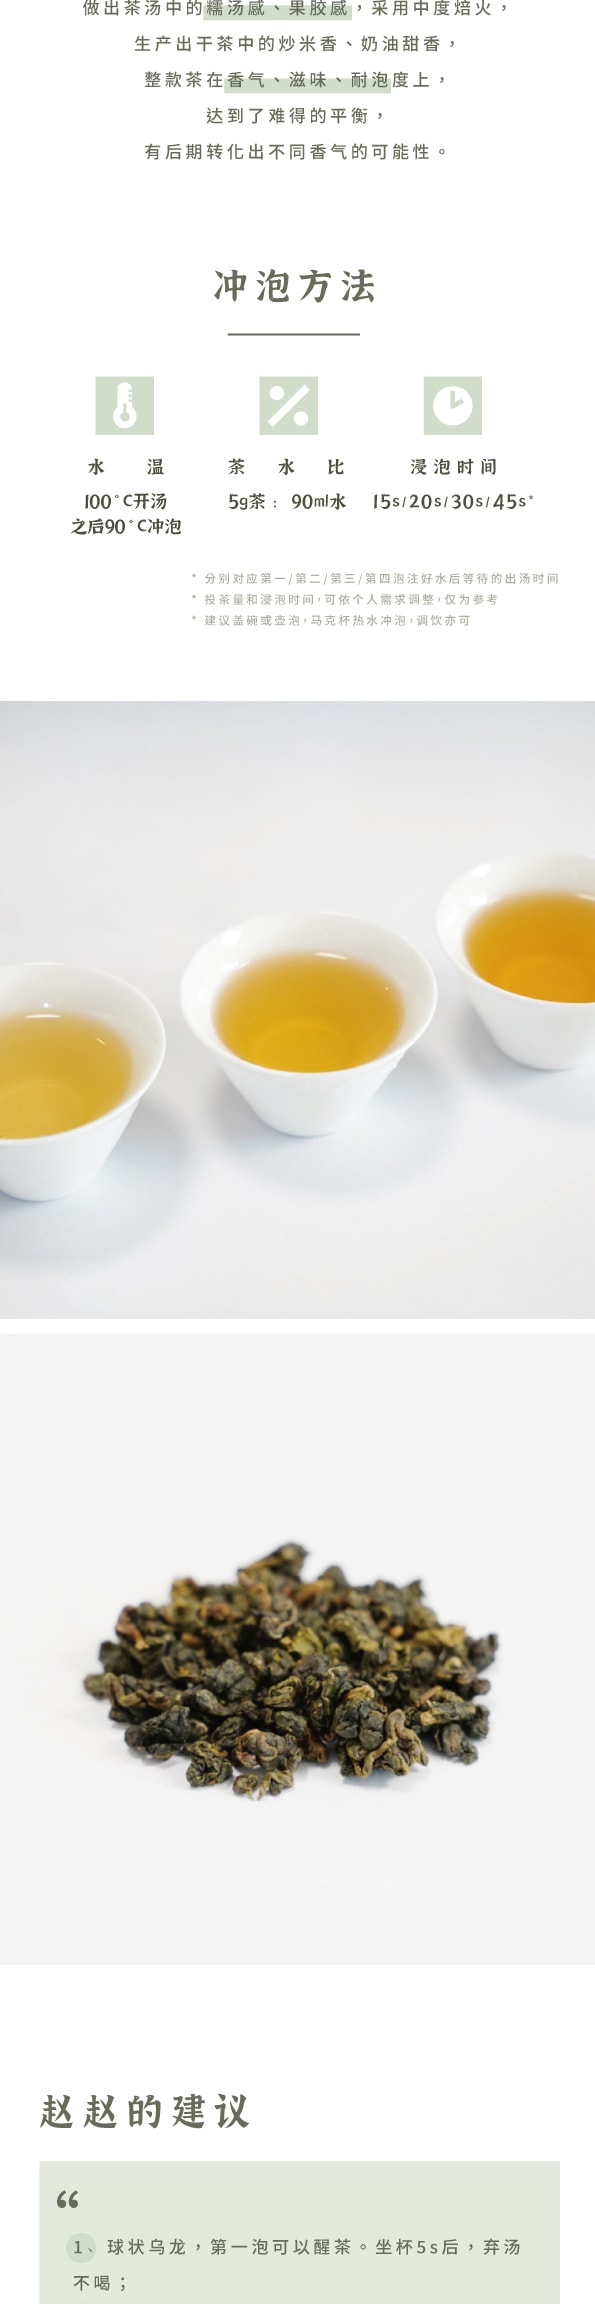 美国 赵赵的茶 ZhaoTea 冻顶乌龙 台湾台中 经典乌龙茶 炒米香 汤感温和 试饮三连泡 15g (5gx3)